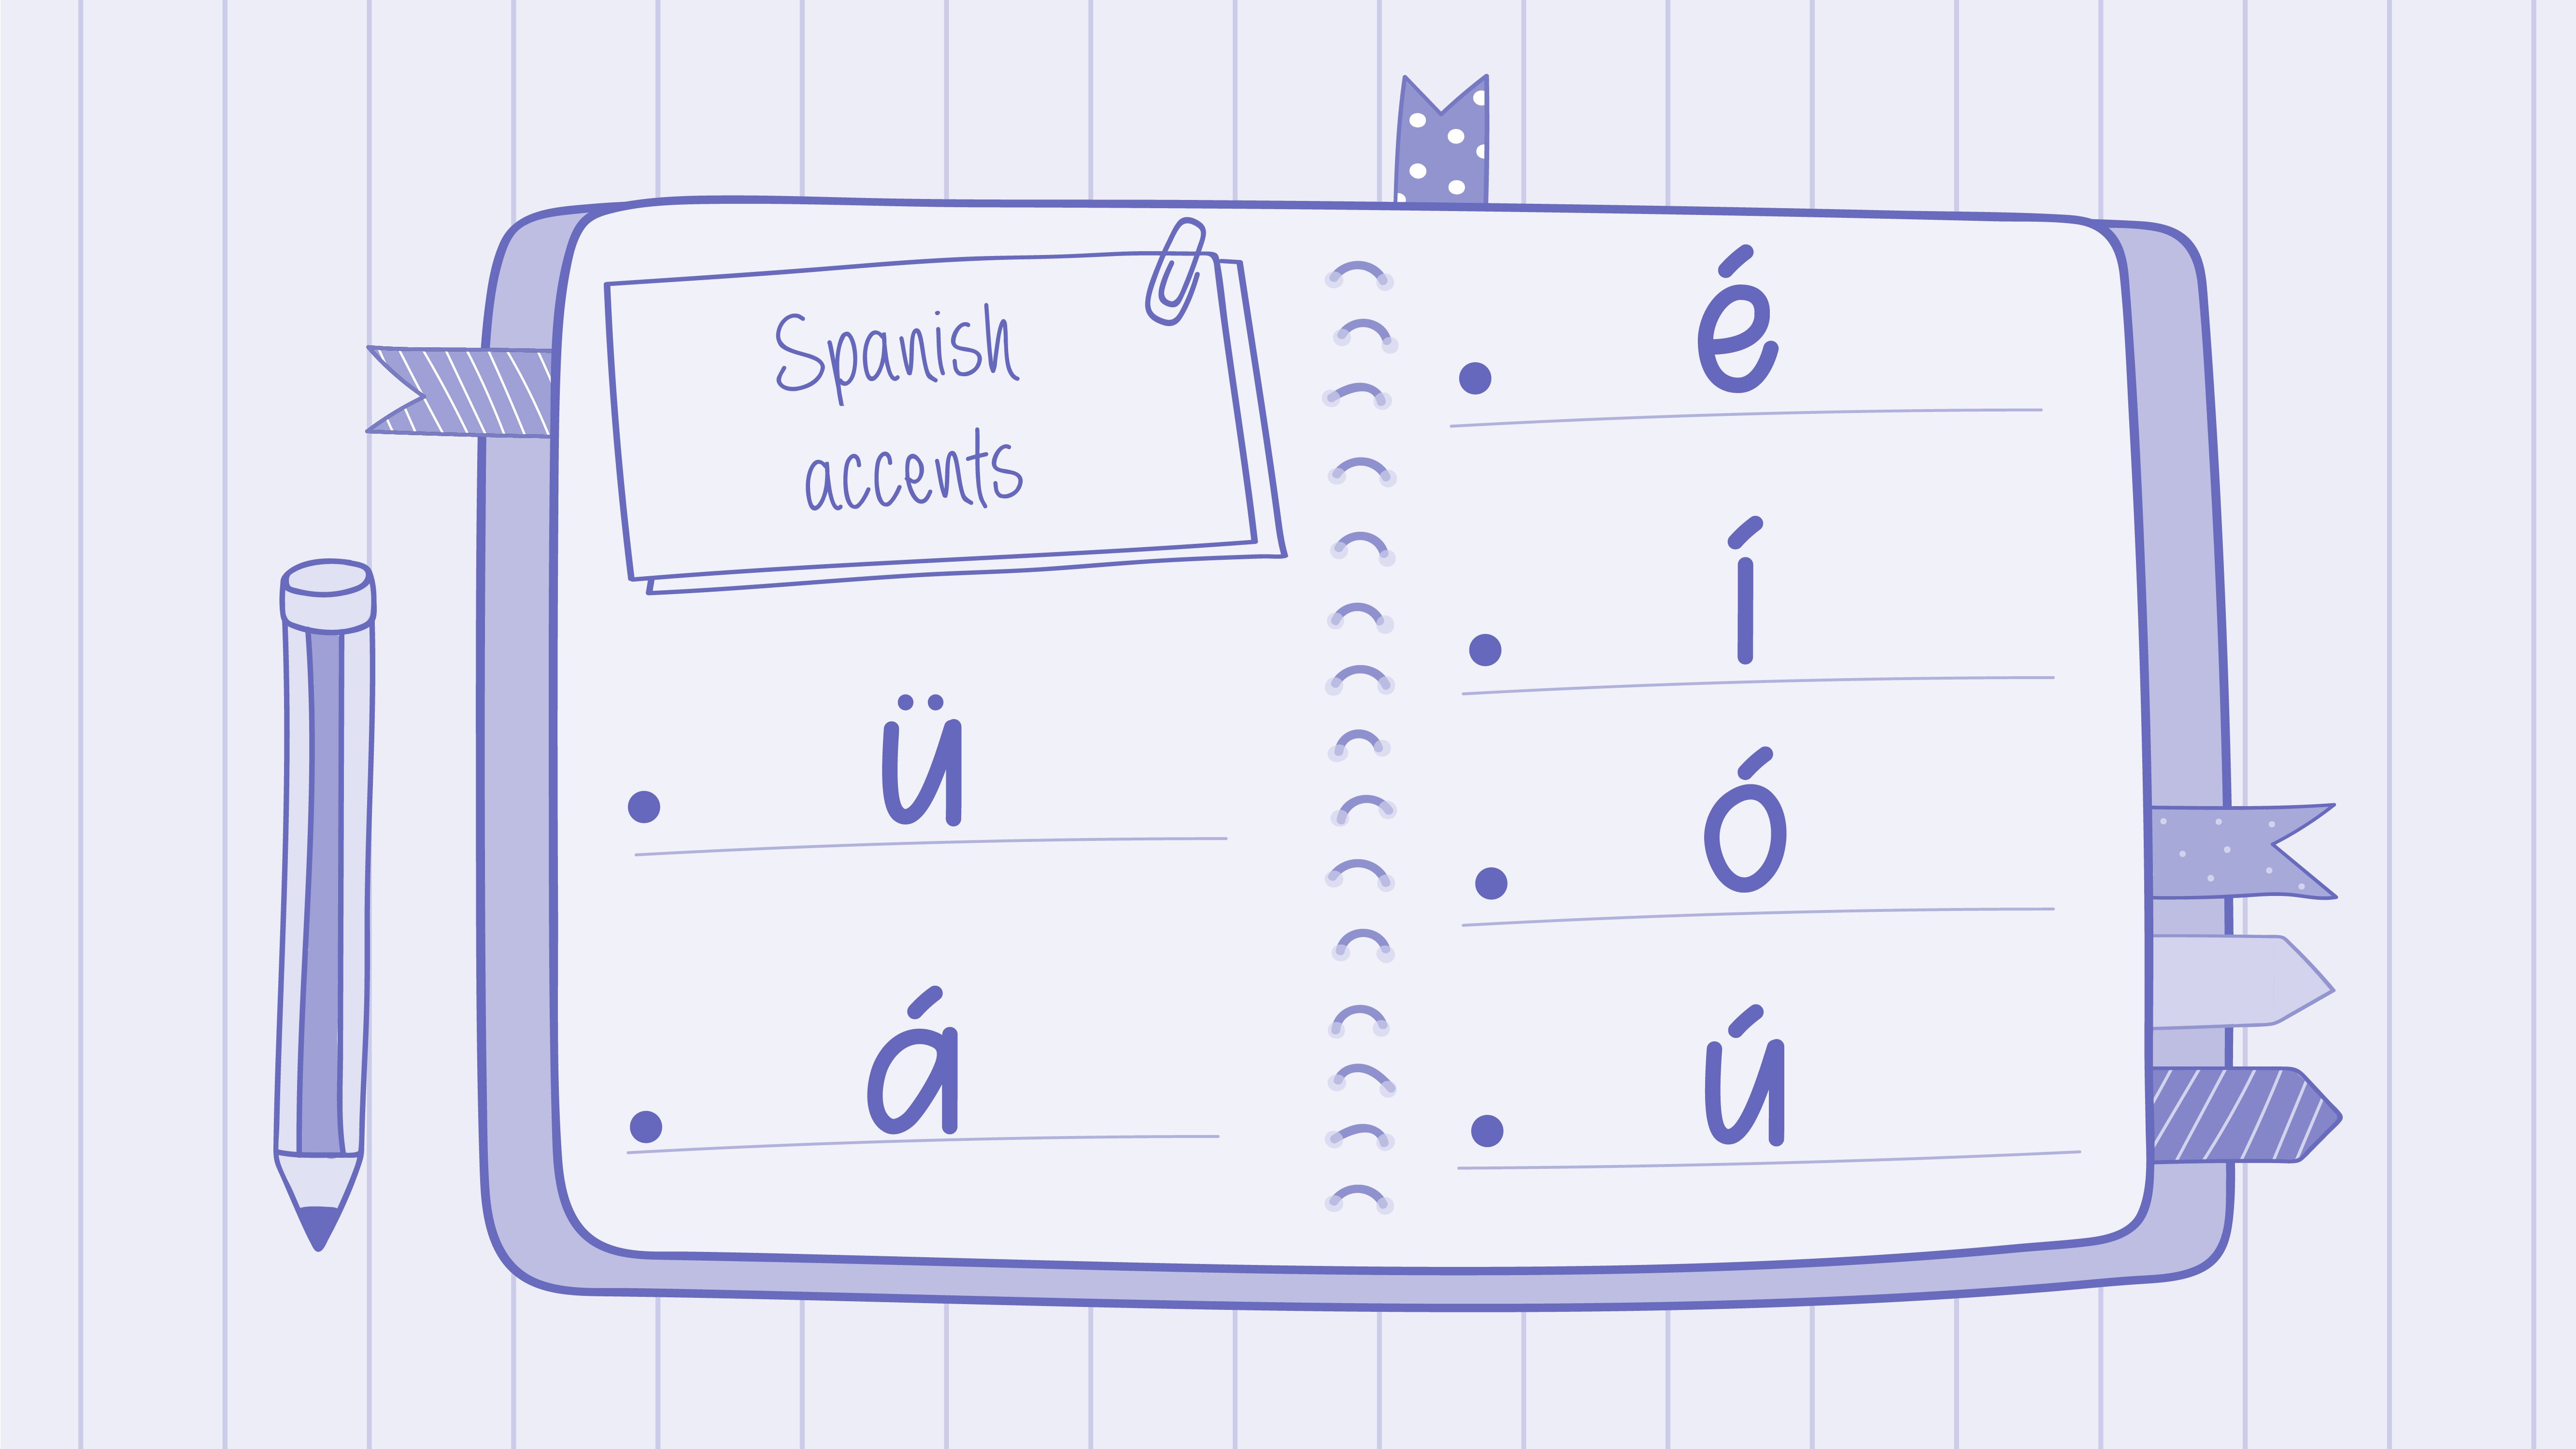 A snapshot of a notebook page with the Spanish accents: ü, á, é, í, ó, ú.